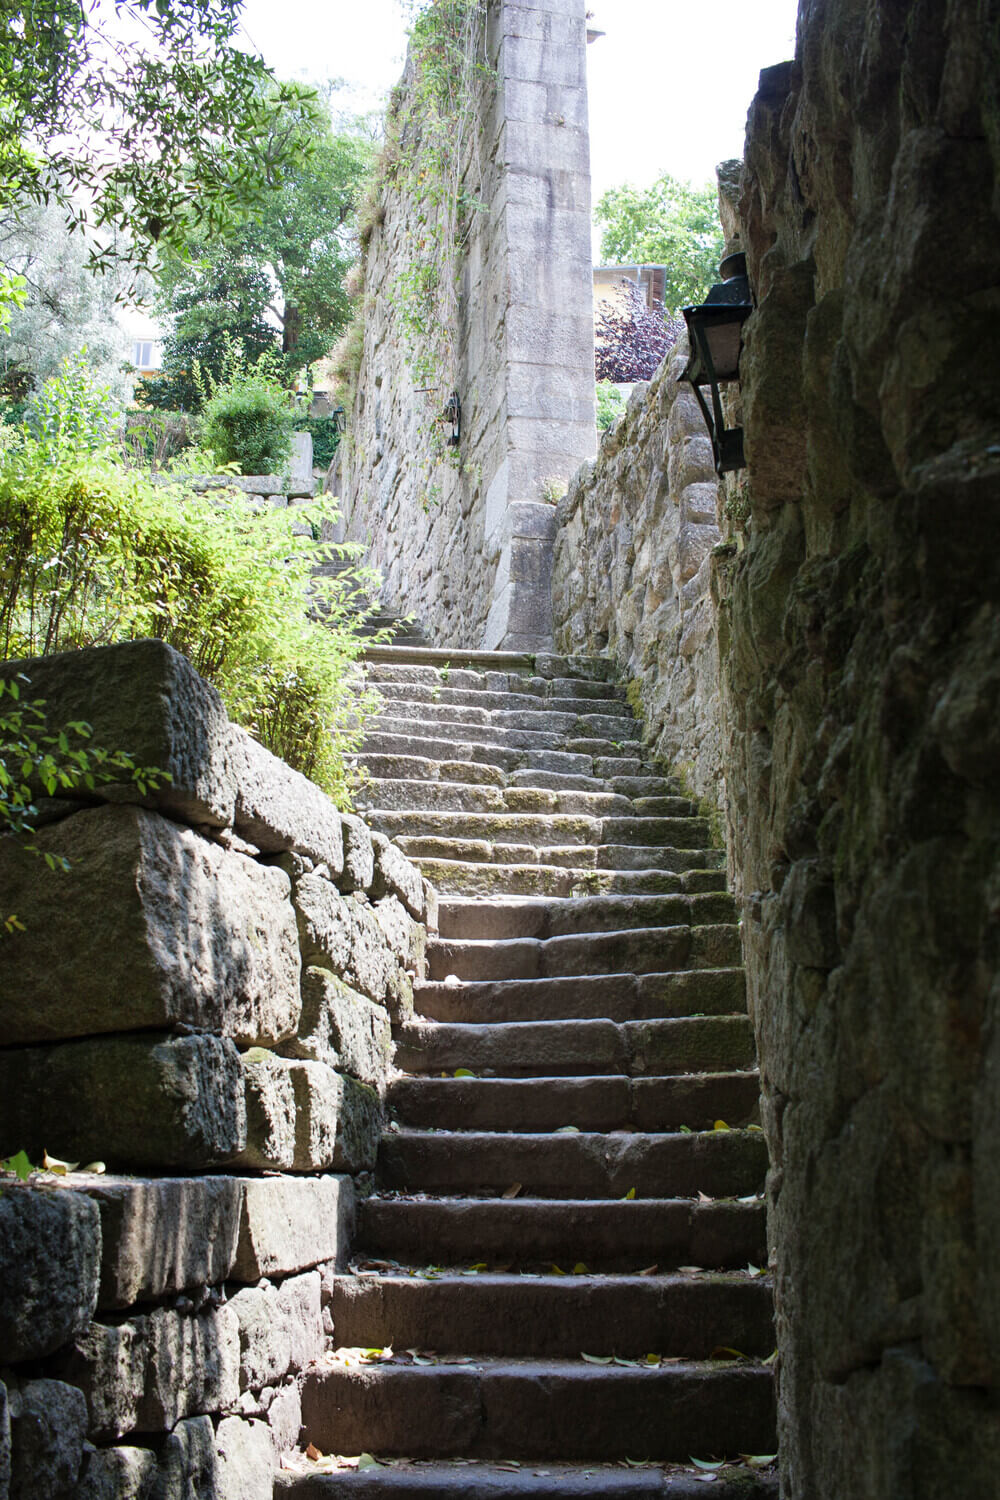 Stone staircase at Parque das Virtudes in Porto.